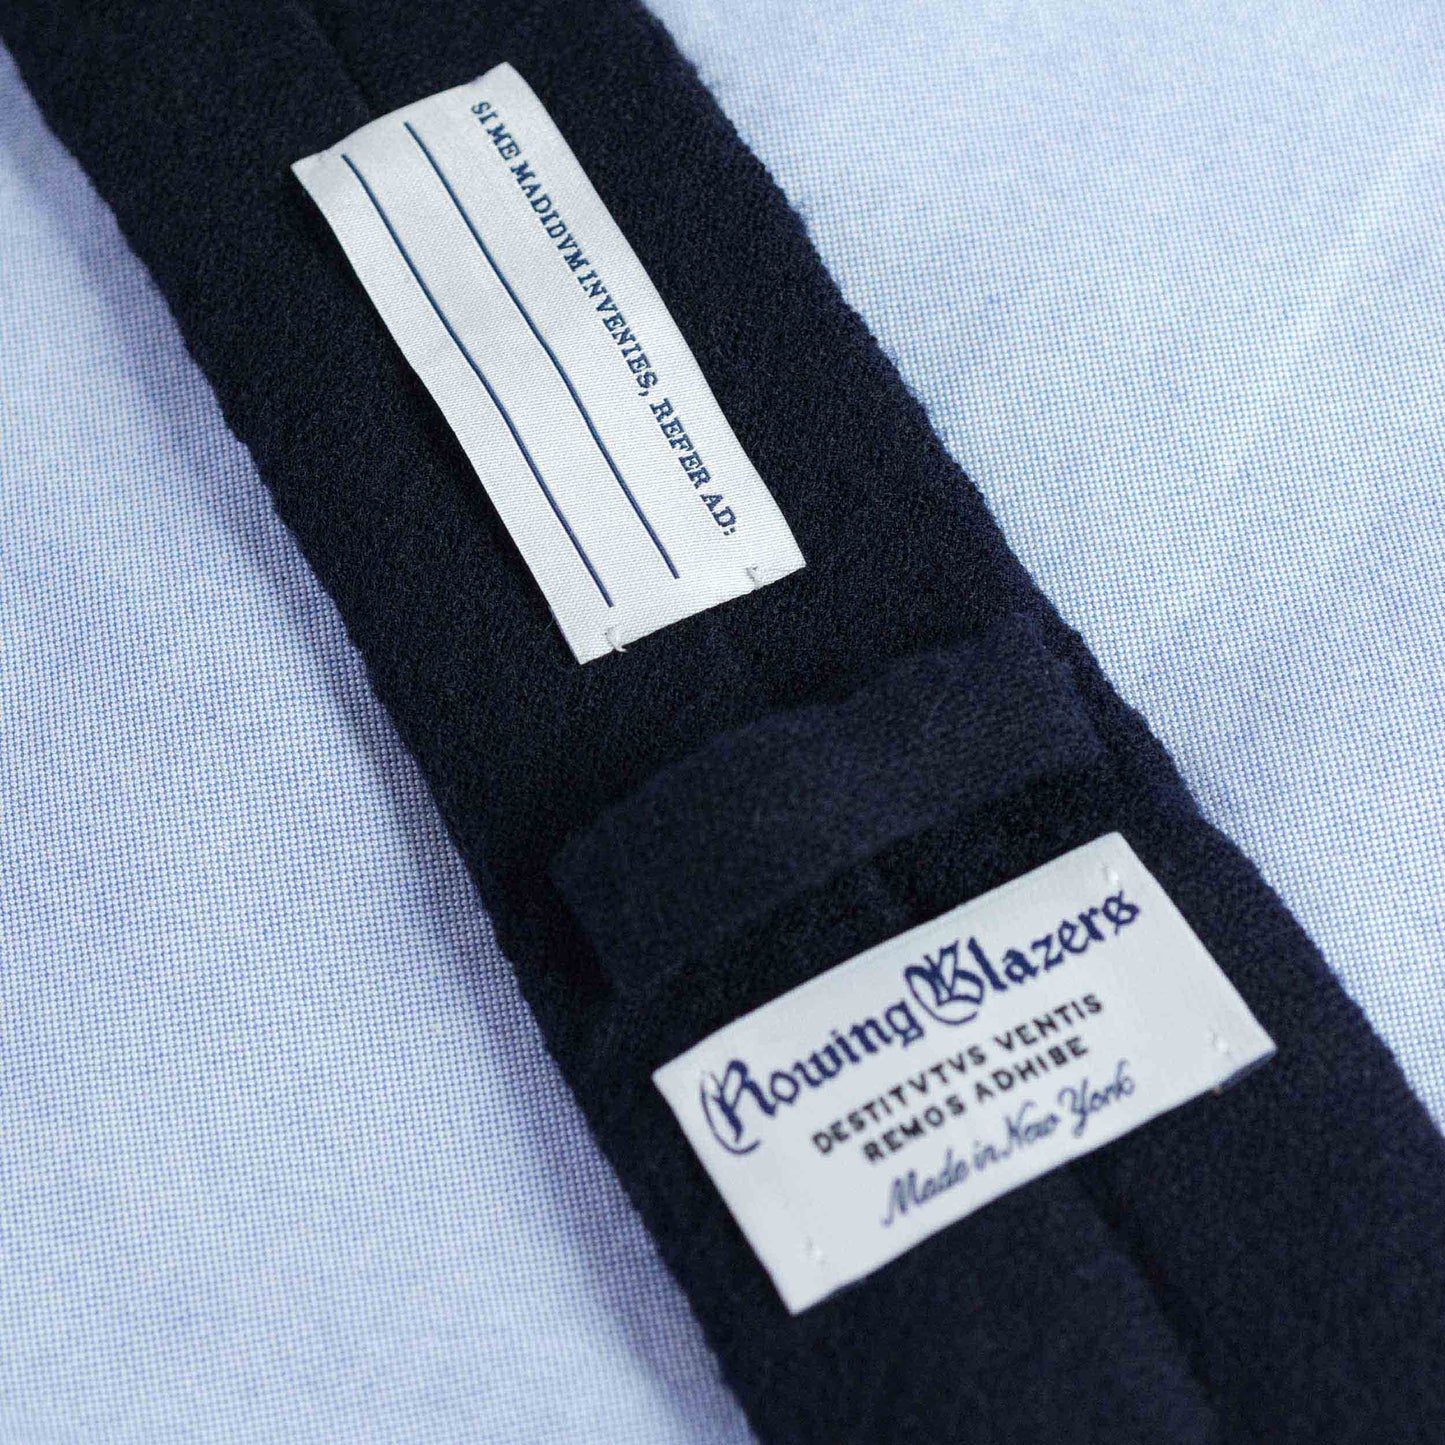 Japanese Wool Necktie (Dodo Tie)